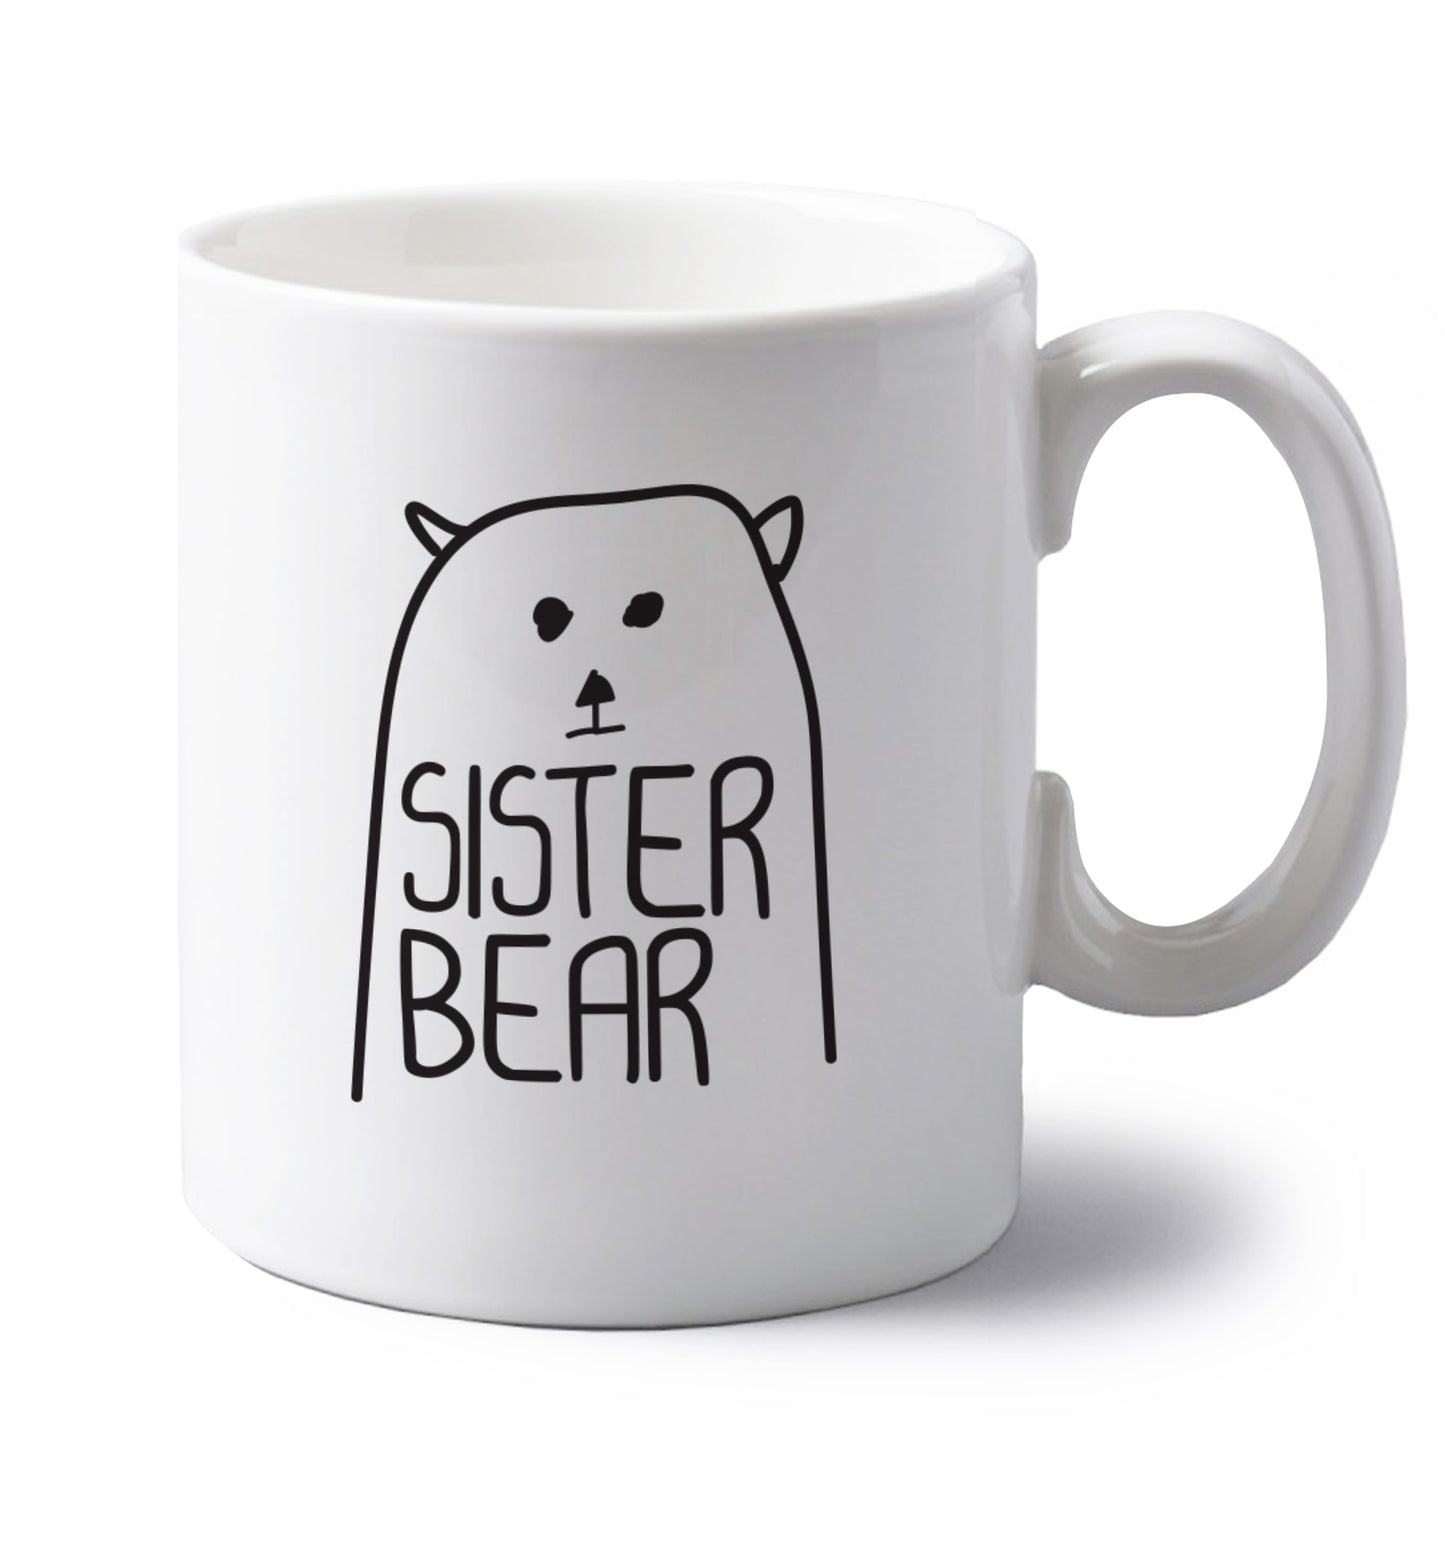 Sister bear left handed white ceramic mug 